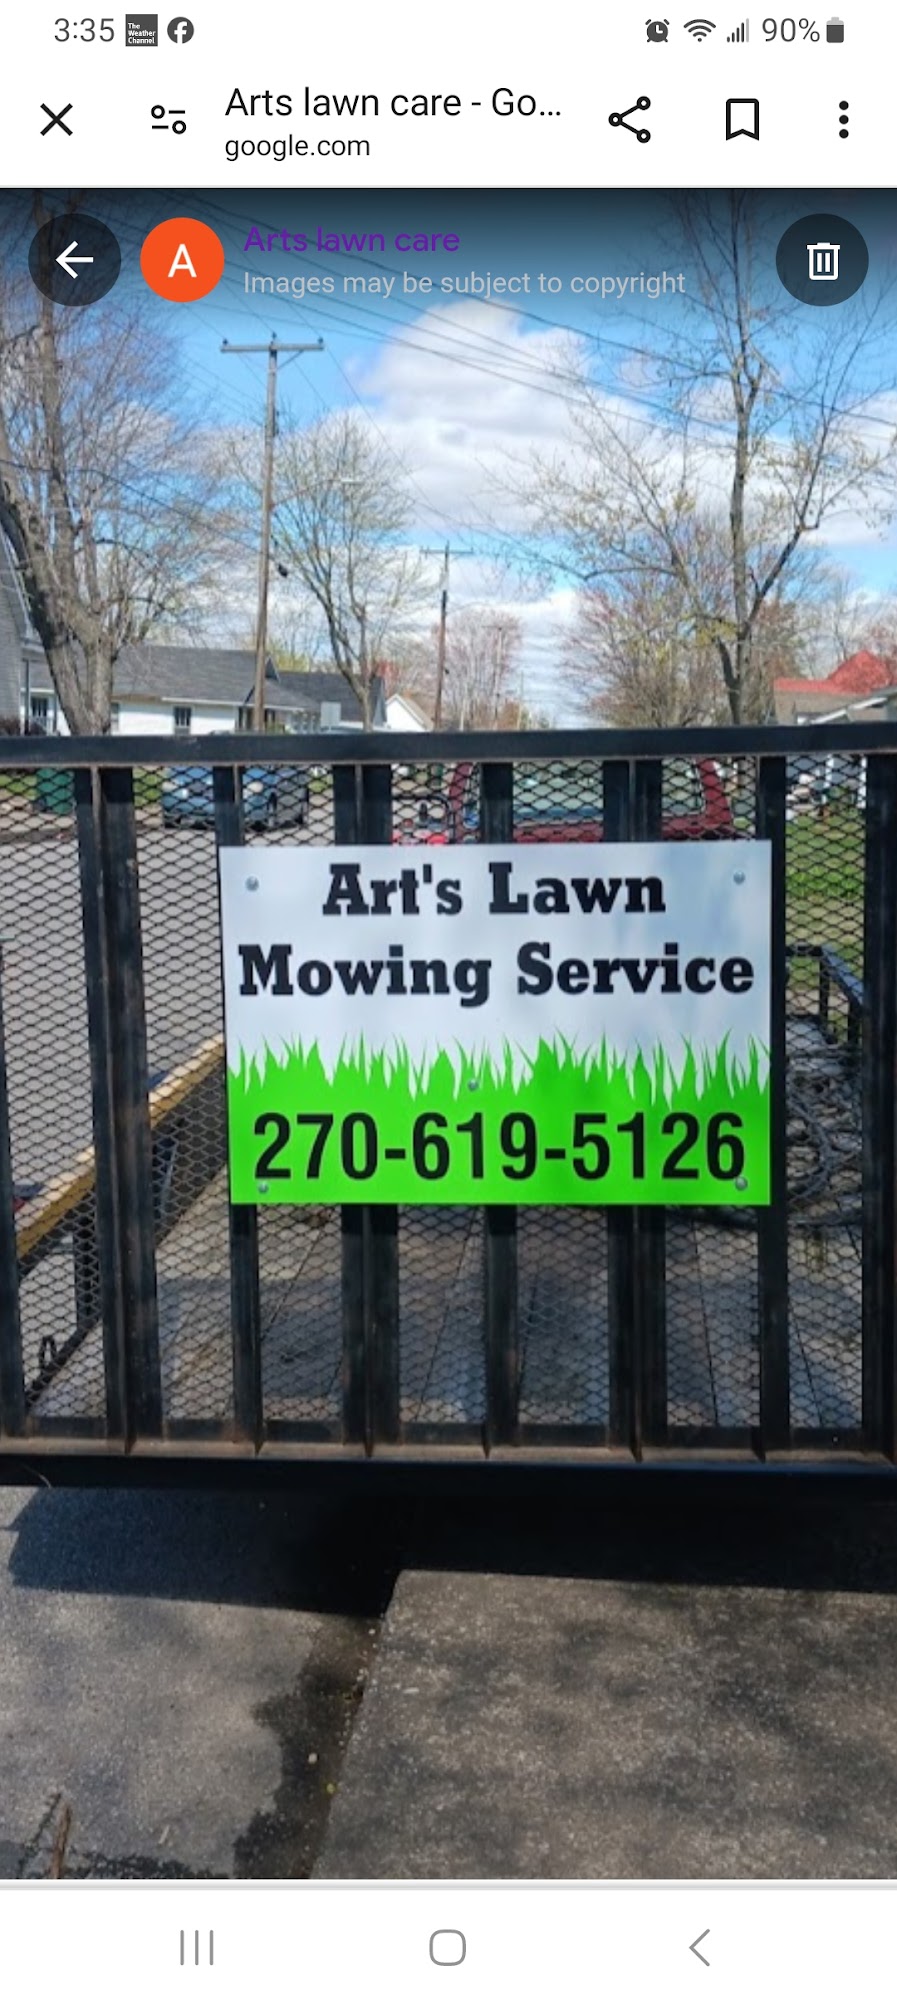 Arts lawn care